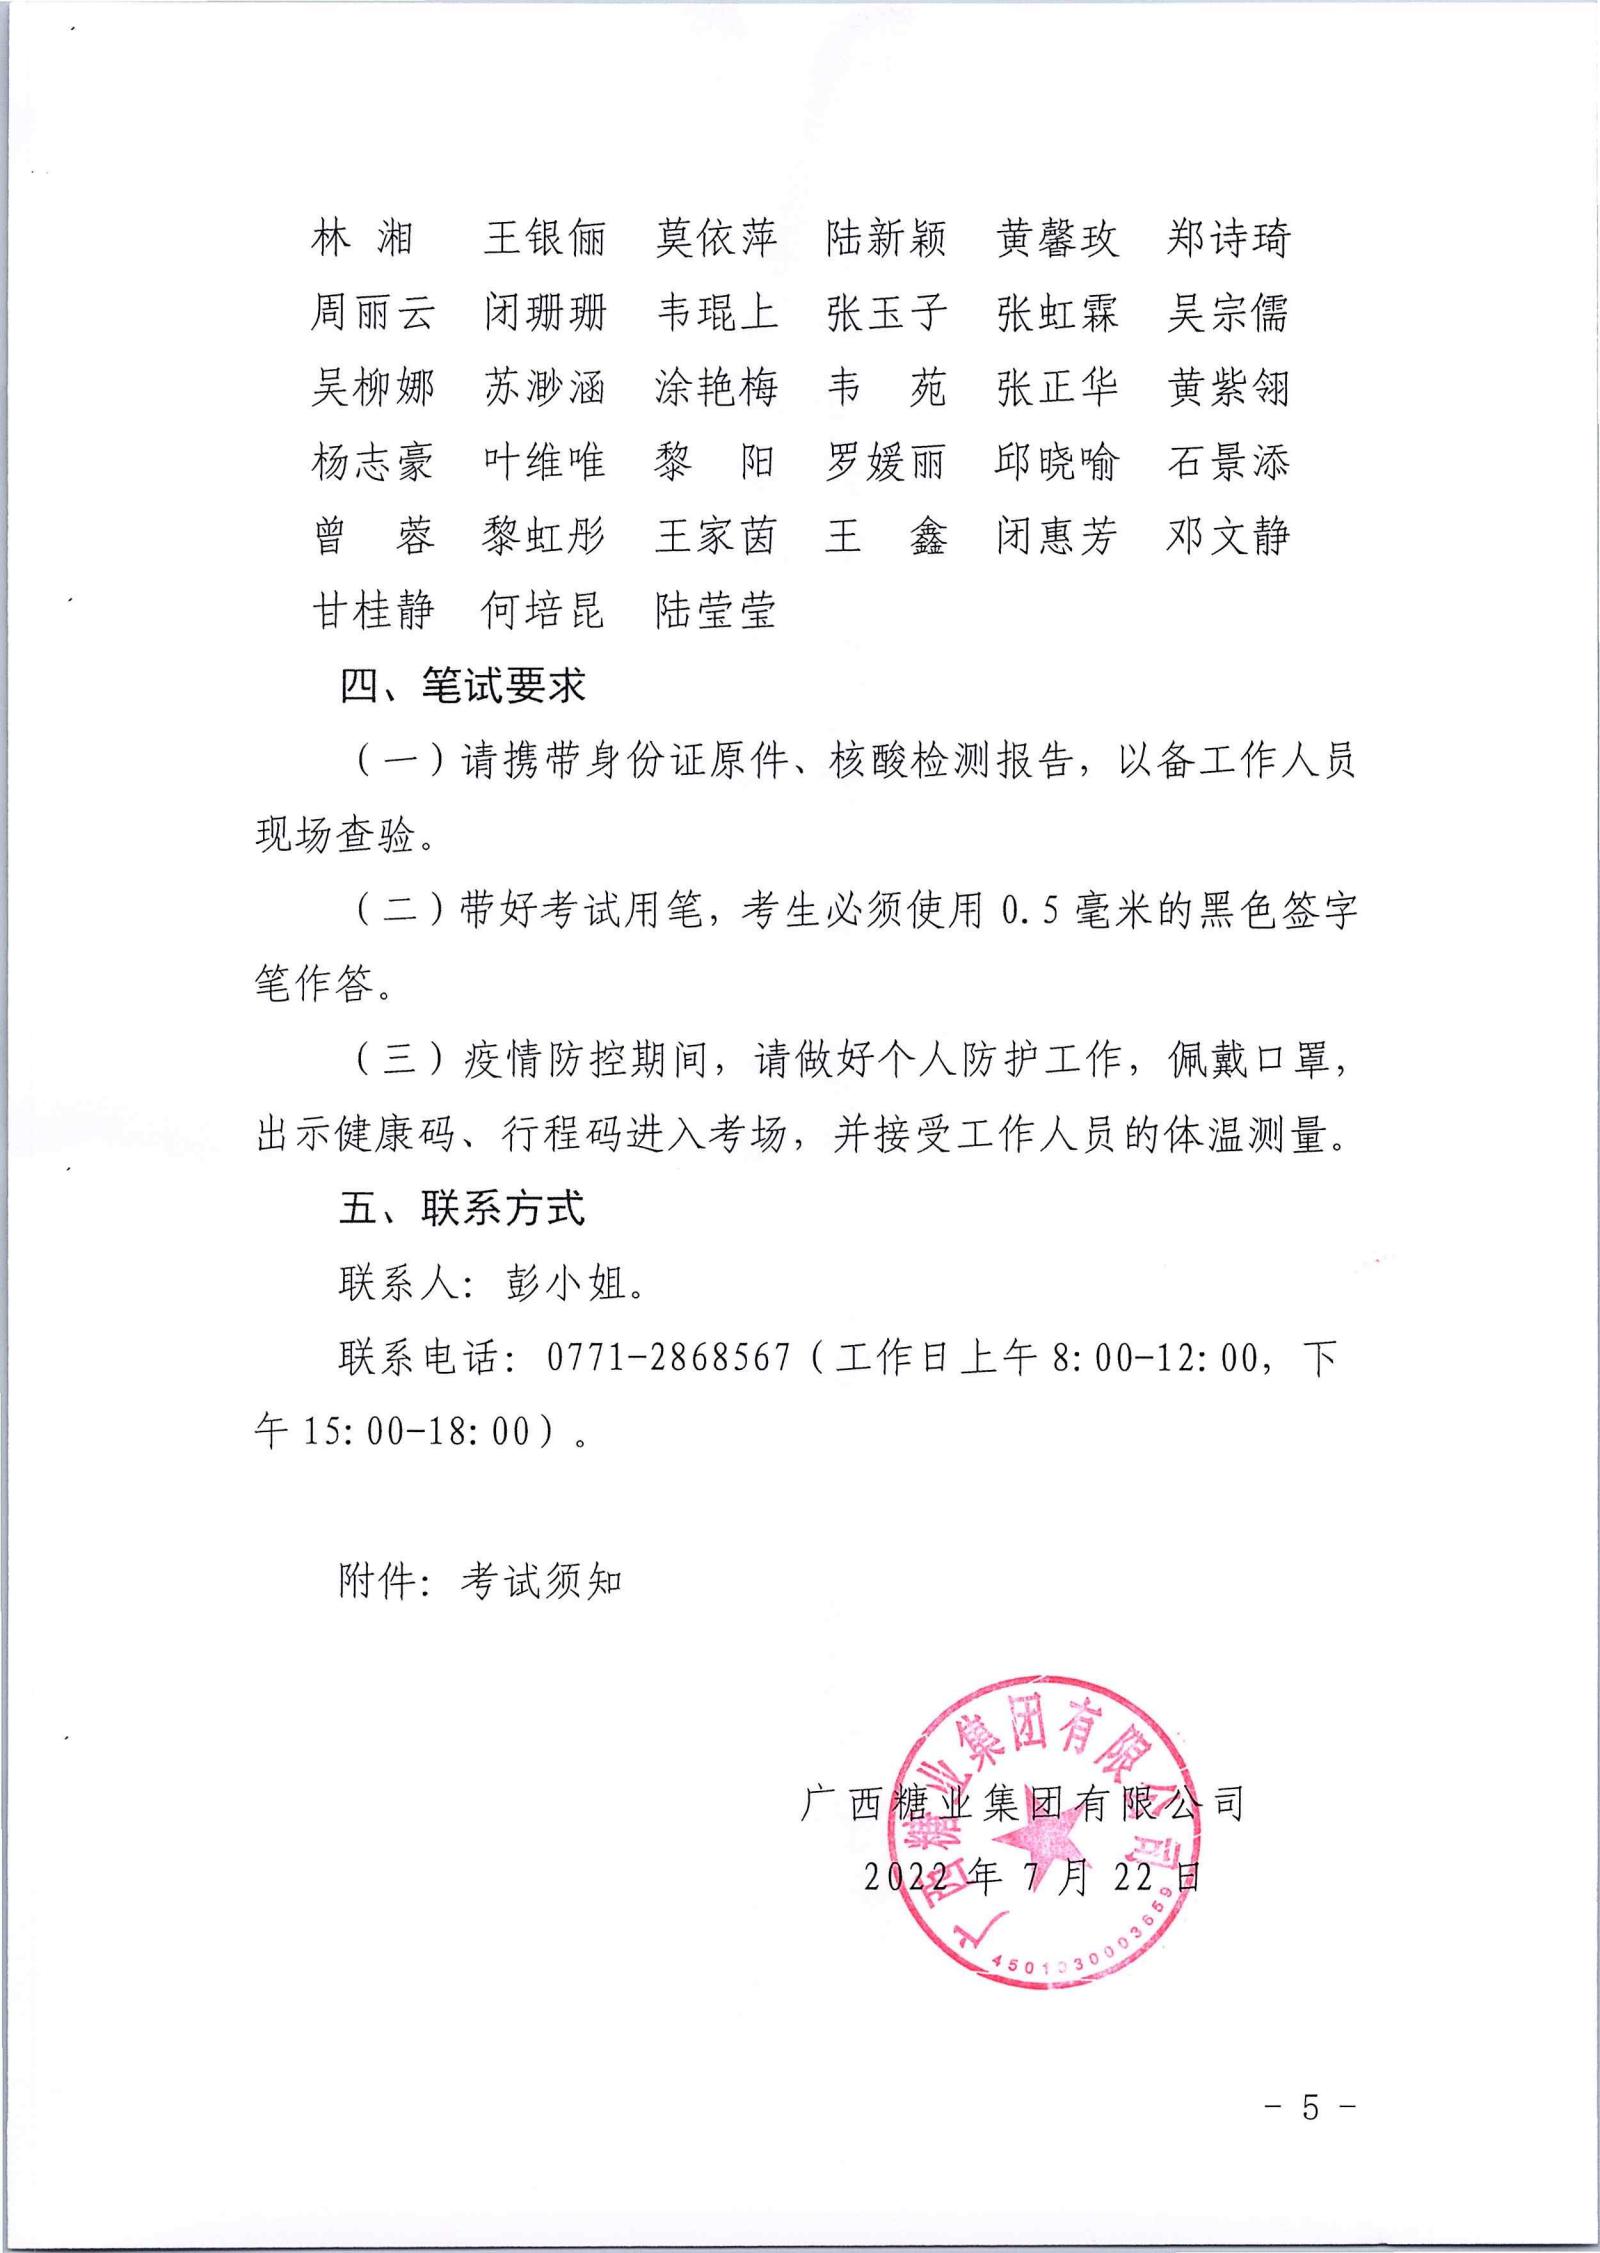 广西糖业集团有限公司2022年第一批社会公开招聘笔试公告_04.jpg